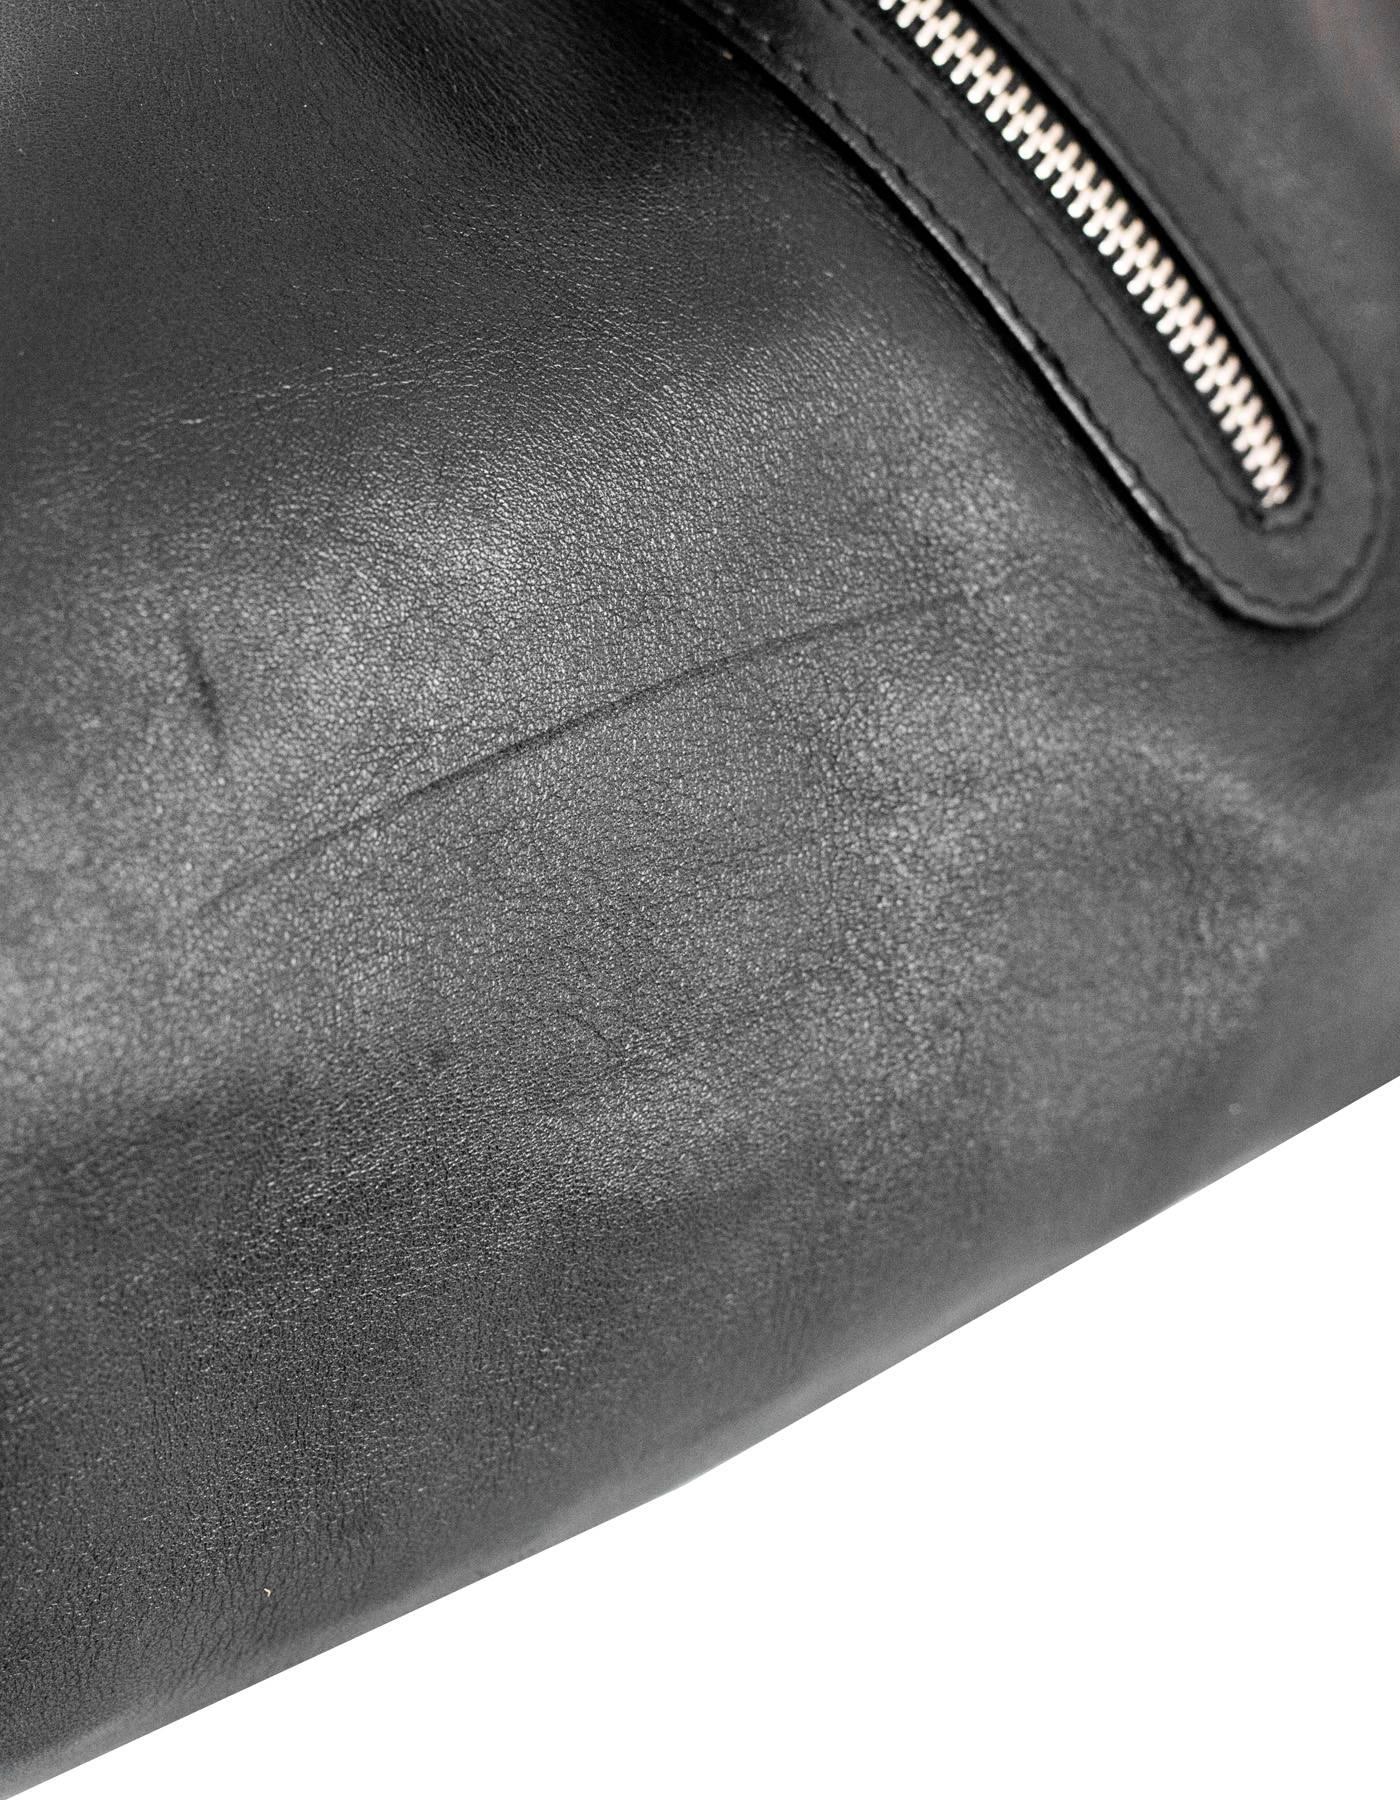 Furla Black Leather Carmen Zip Tote Bag 2